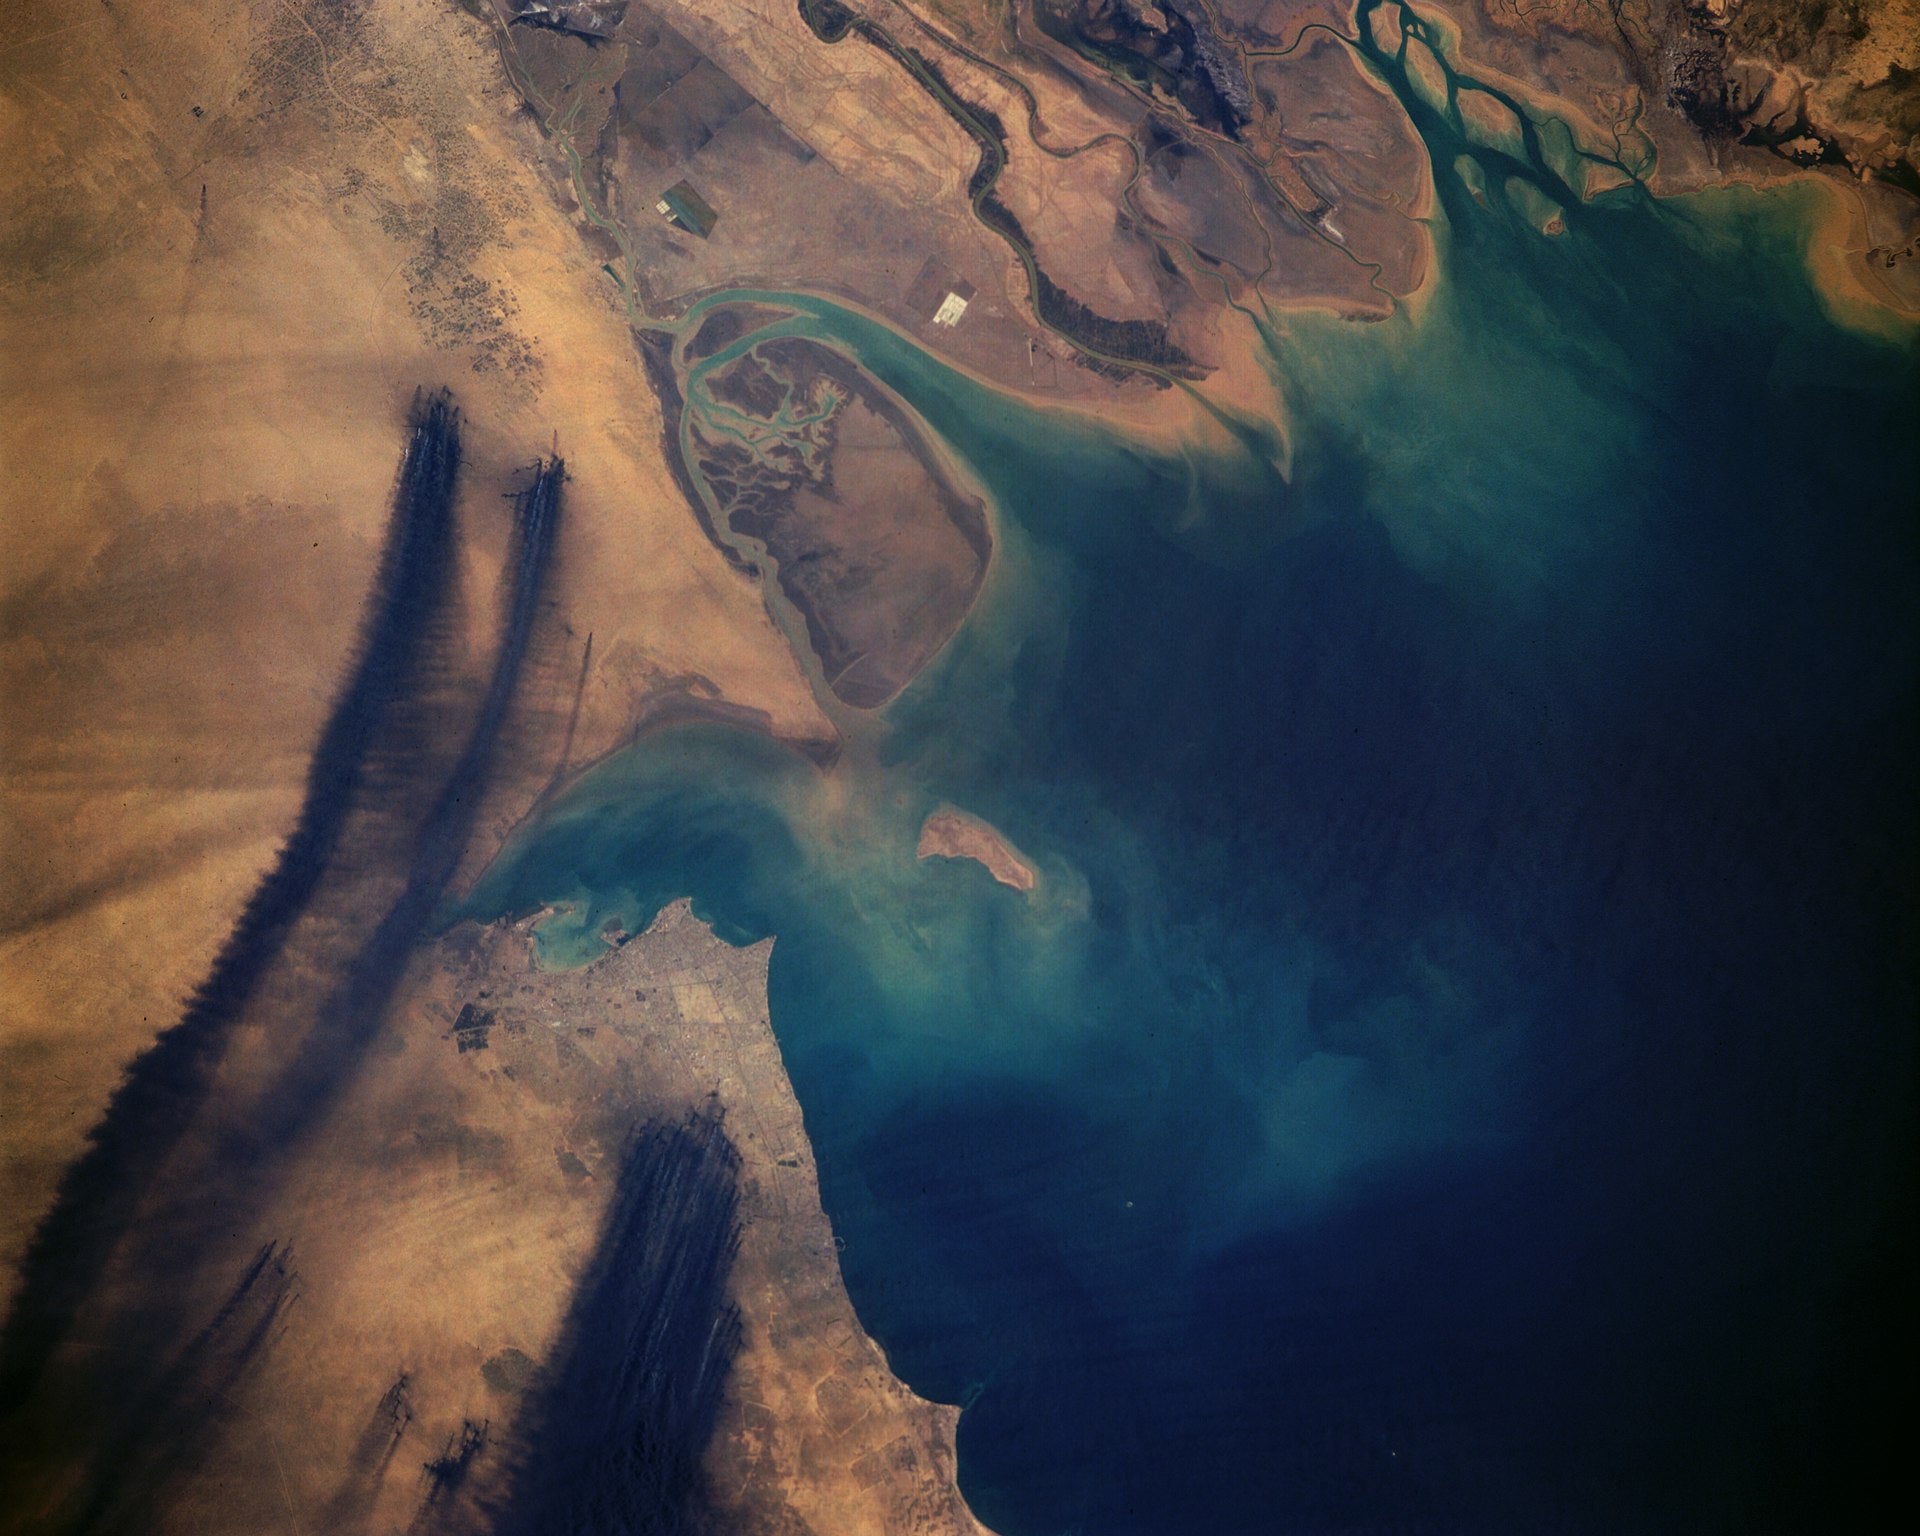 Fotografia aérea capturada do espaço que mostra o fumo negro derivado dos incêndios nos poços de petróleo.